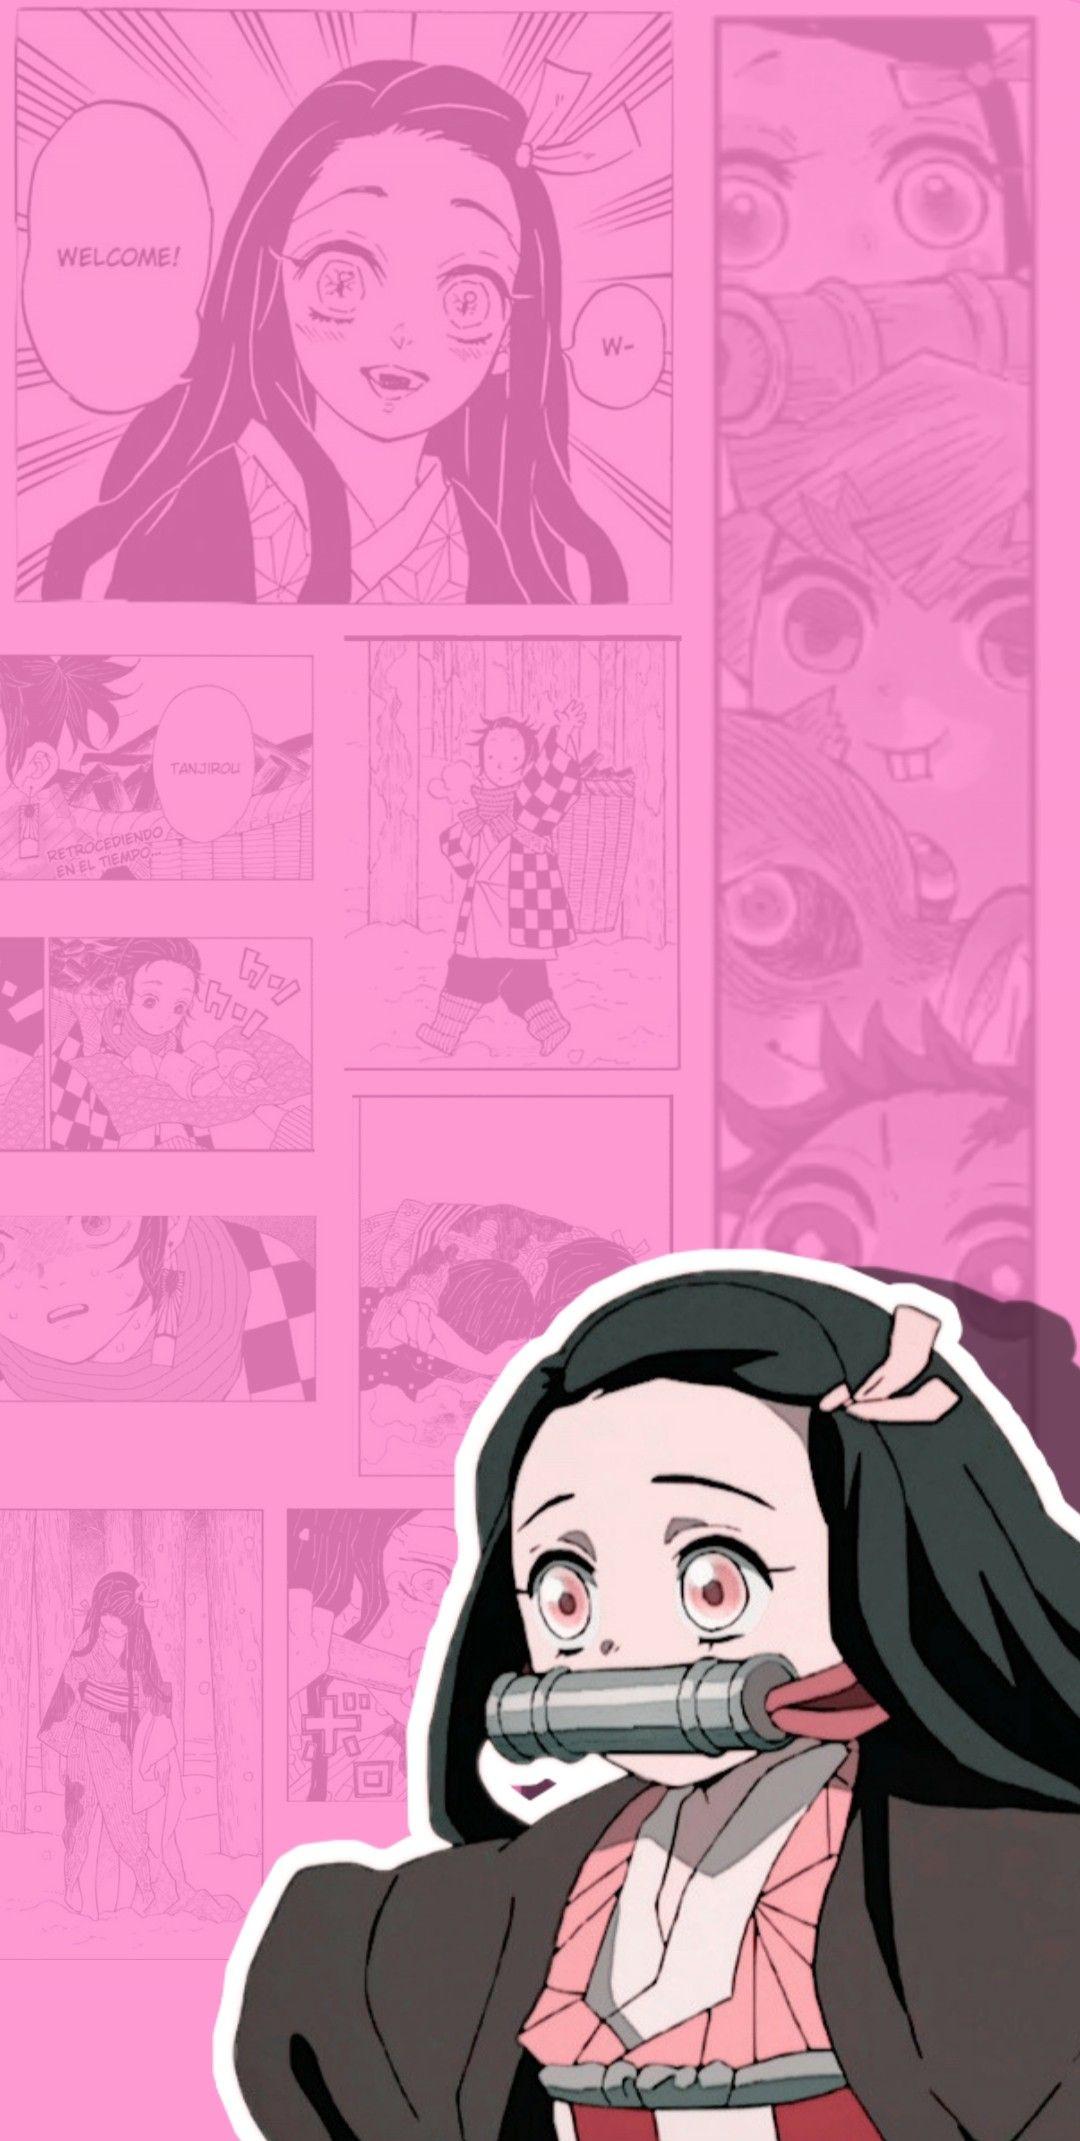 Wallpaper ID 455729  Anime Demon Slayer Kimetsu no Yaiba Phone Wallpaper  Nezuko Kamado 720x1280 free download